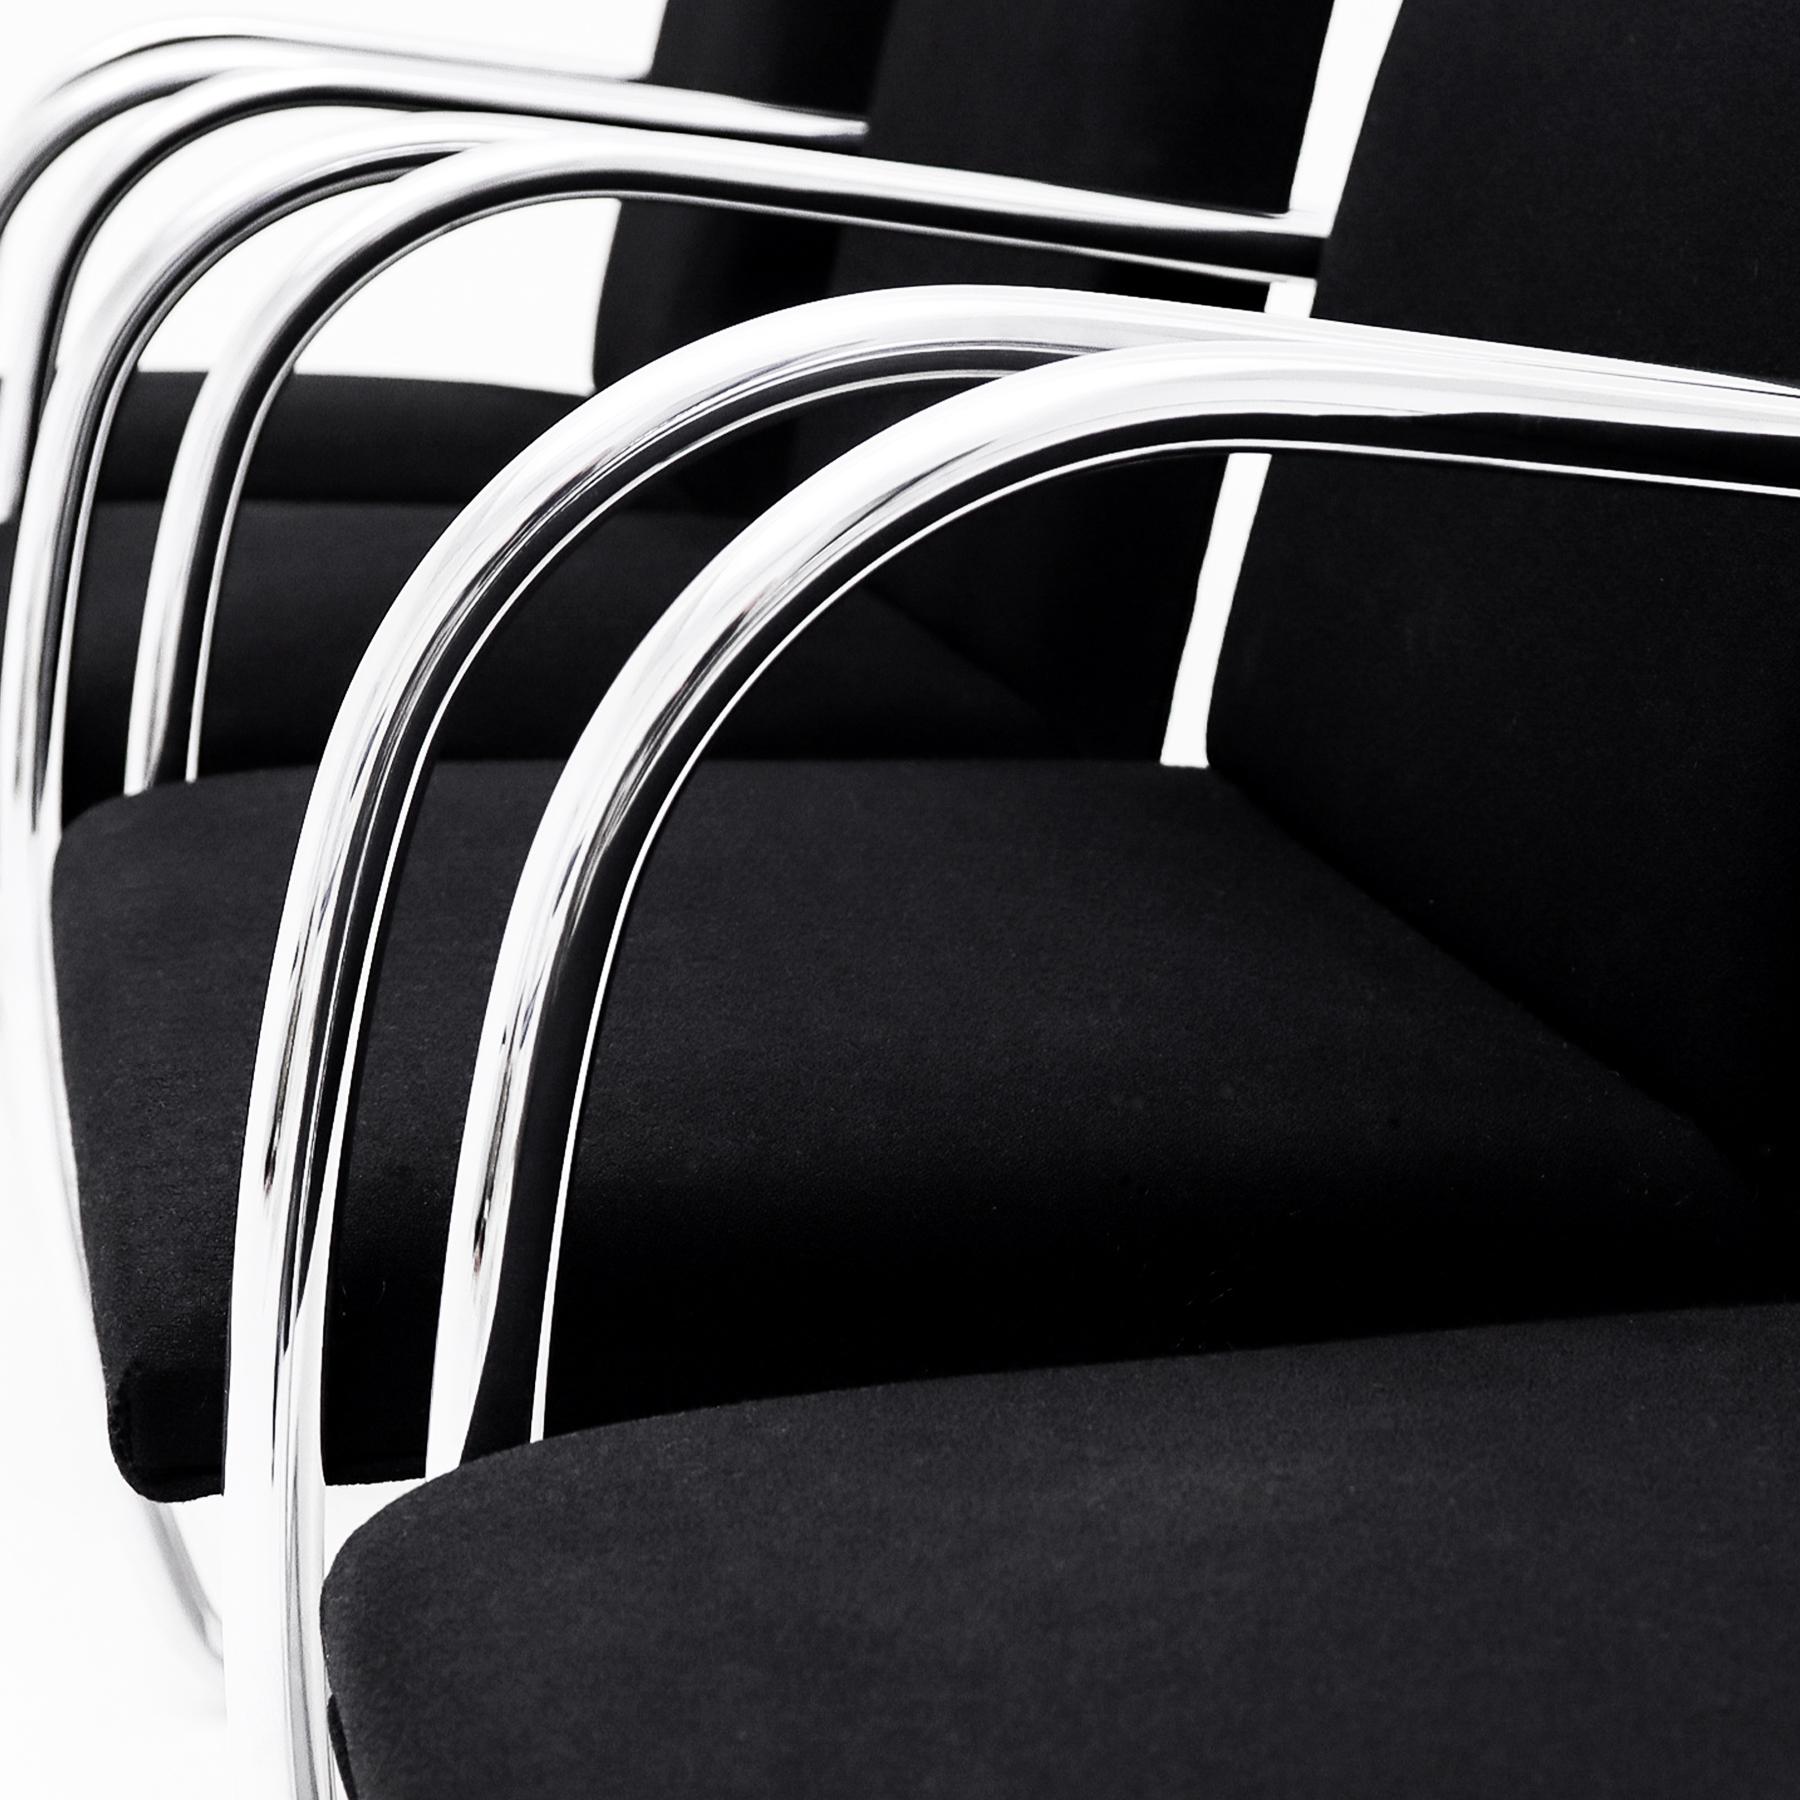 Fin du 20e siècle 4 chaises de salle à manger tubulaires chromées vintage Ludwig Mies van der Rohe Knoll, MR50 BRNO en vente